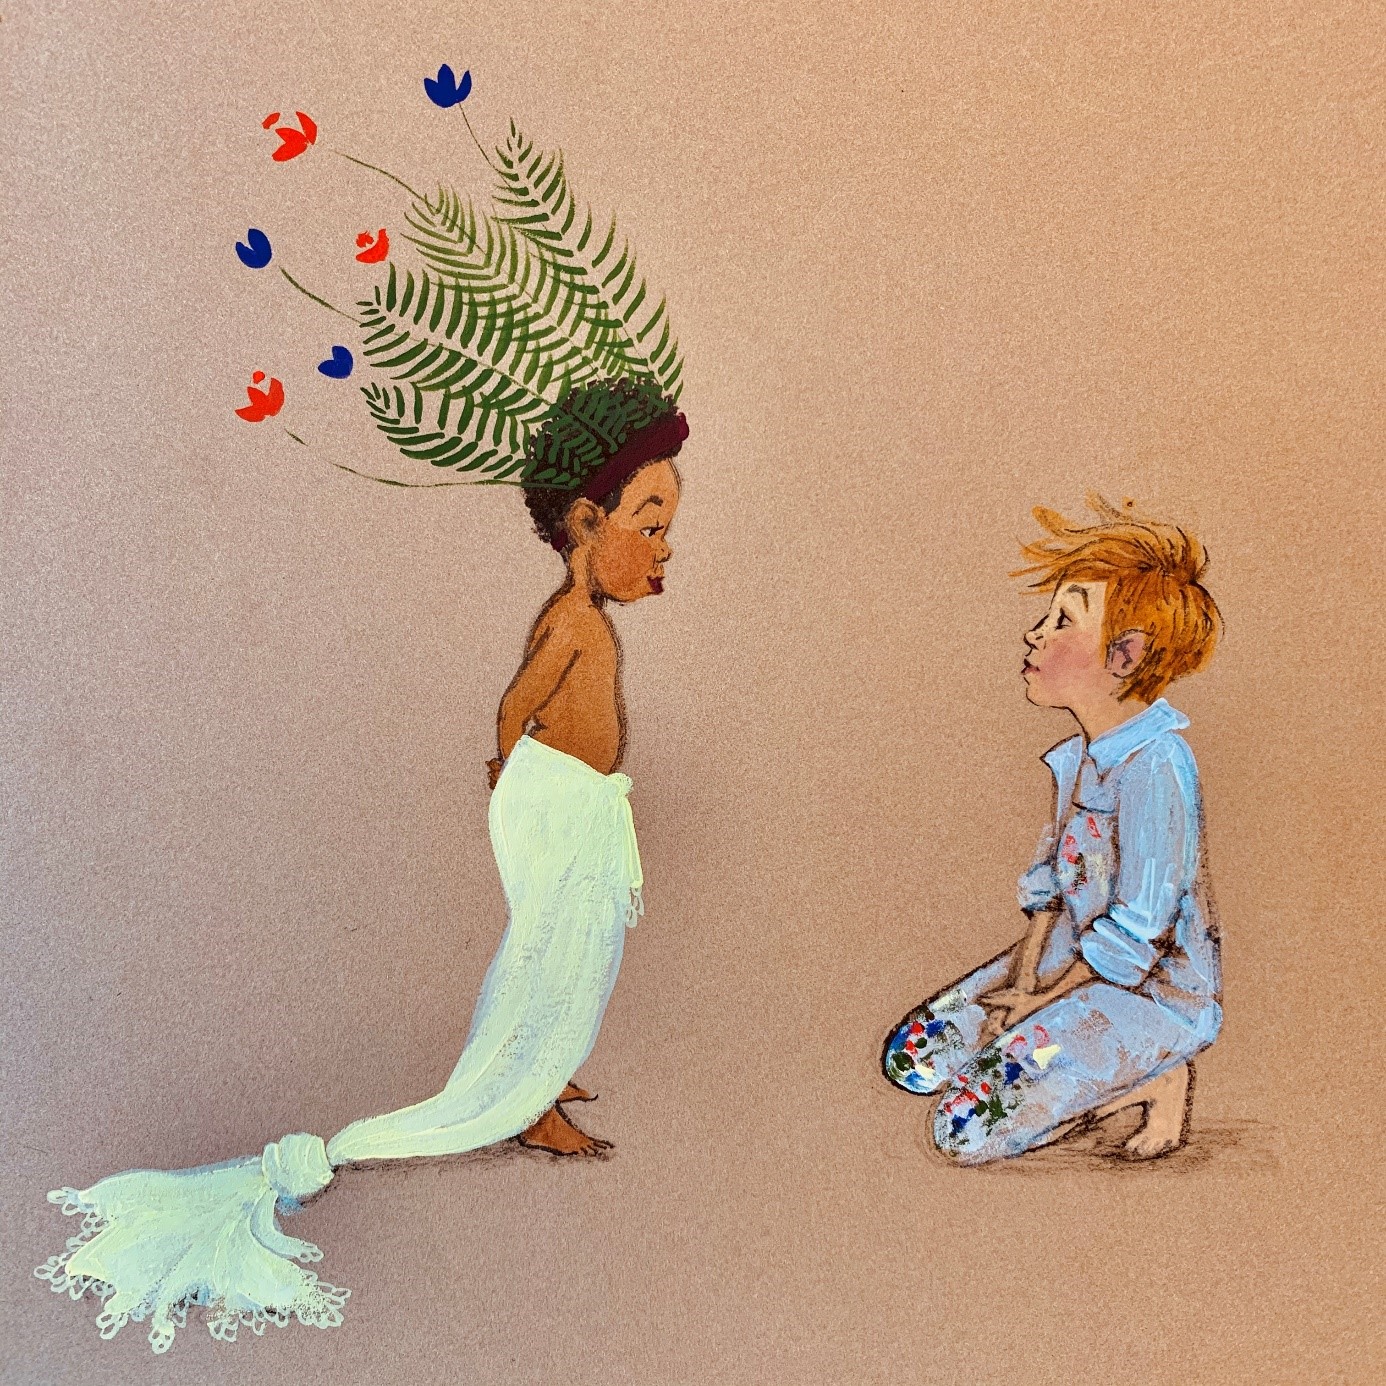 Abbildung 1: „Jessica und Julián“: Loves Illustration zu ihrem Websiteeintrag „On being a white, cishet artist creating outside my experience...“ (Quelle Jessica Love, Verwendung mit ihrer Erlaubnis)